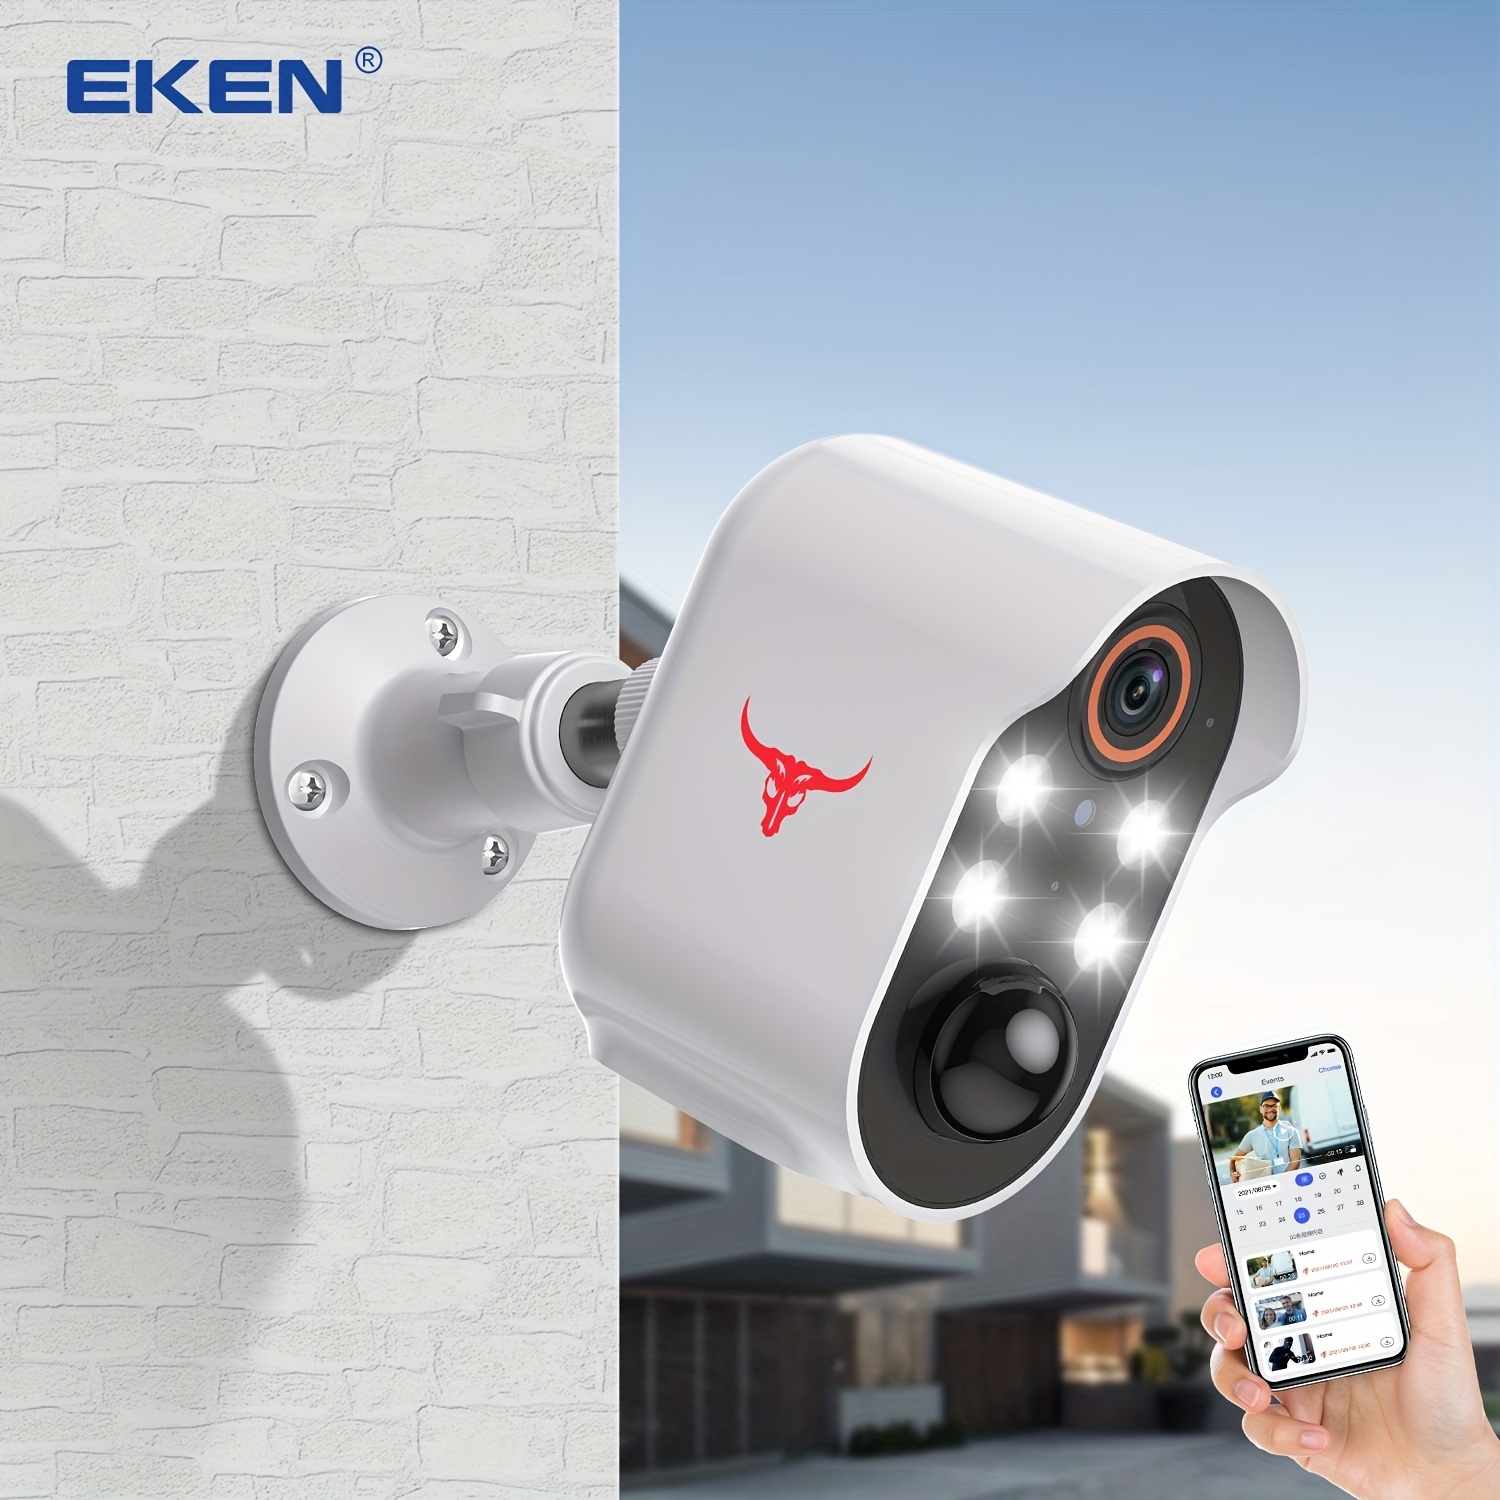 Cámara de seguridad al aire libre, 1080P HD Pan/Tilt 2.4G WiFi, vigilancia  de seguridad para el hogar, visión nocturna de 360°, audio de 2 vías